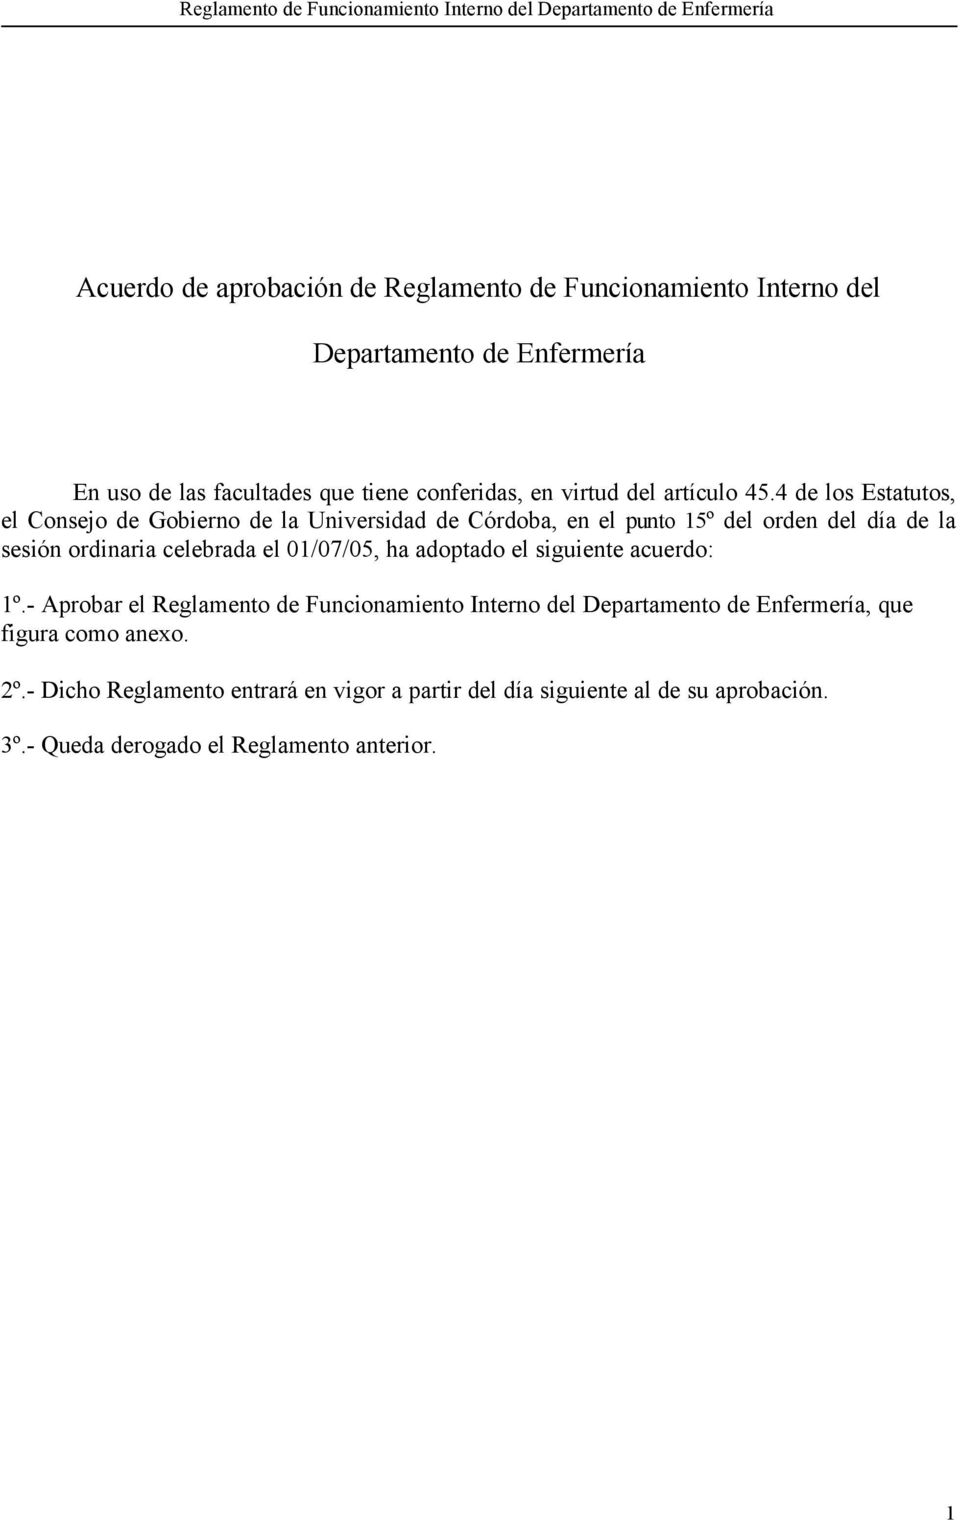 4 de los Estatutos, el Consejo de Gobierno de la Universidad de Córdoba, en el punto 15º del orden del día de la sesión ordinaria celebrada el